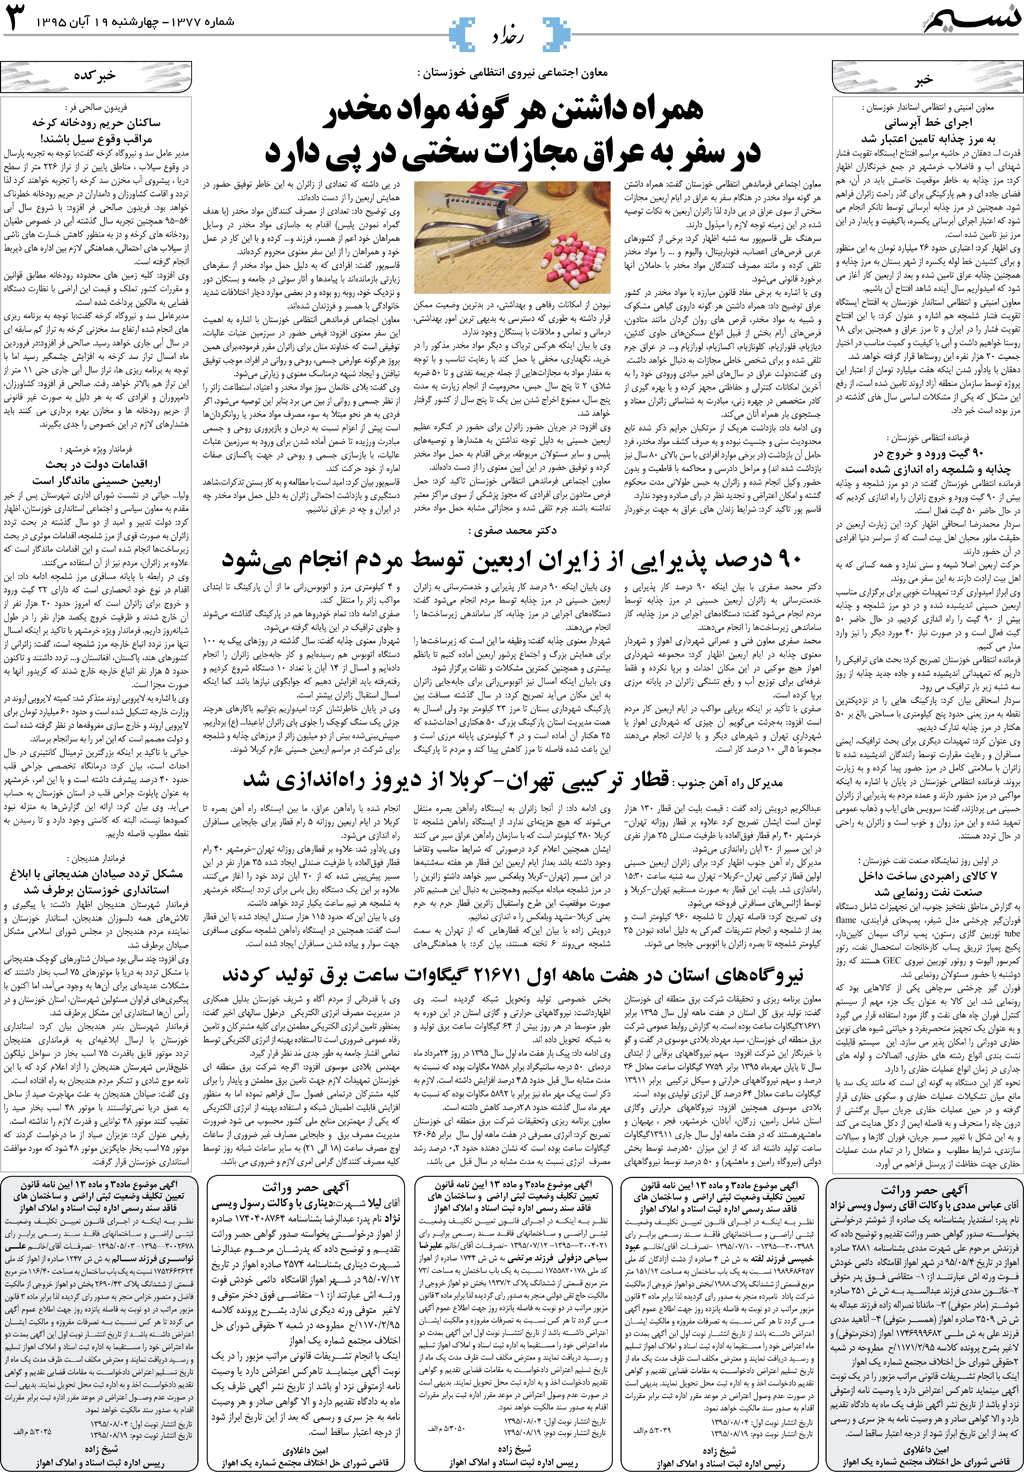 صفحه رخداد روزنامه نسیم شماره 1377